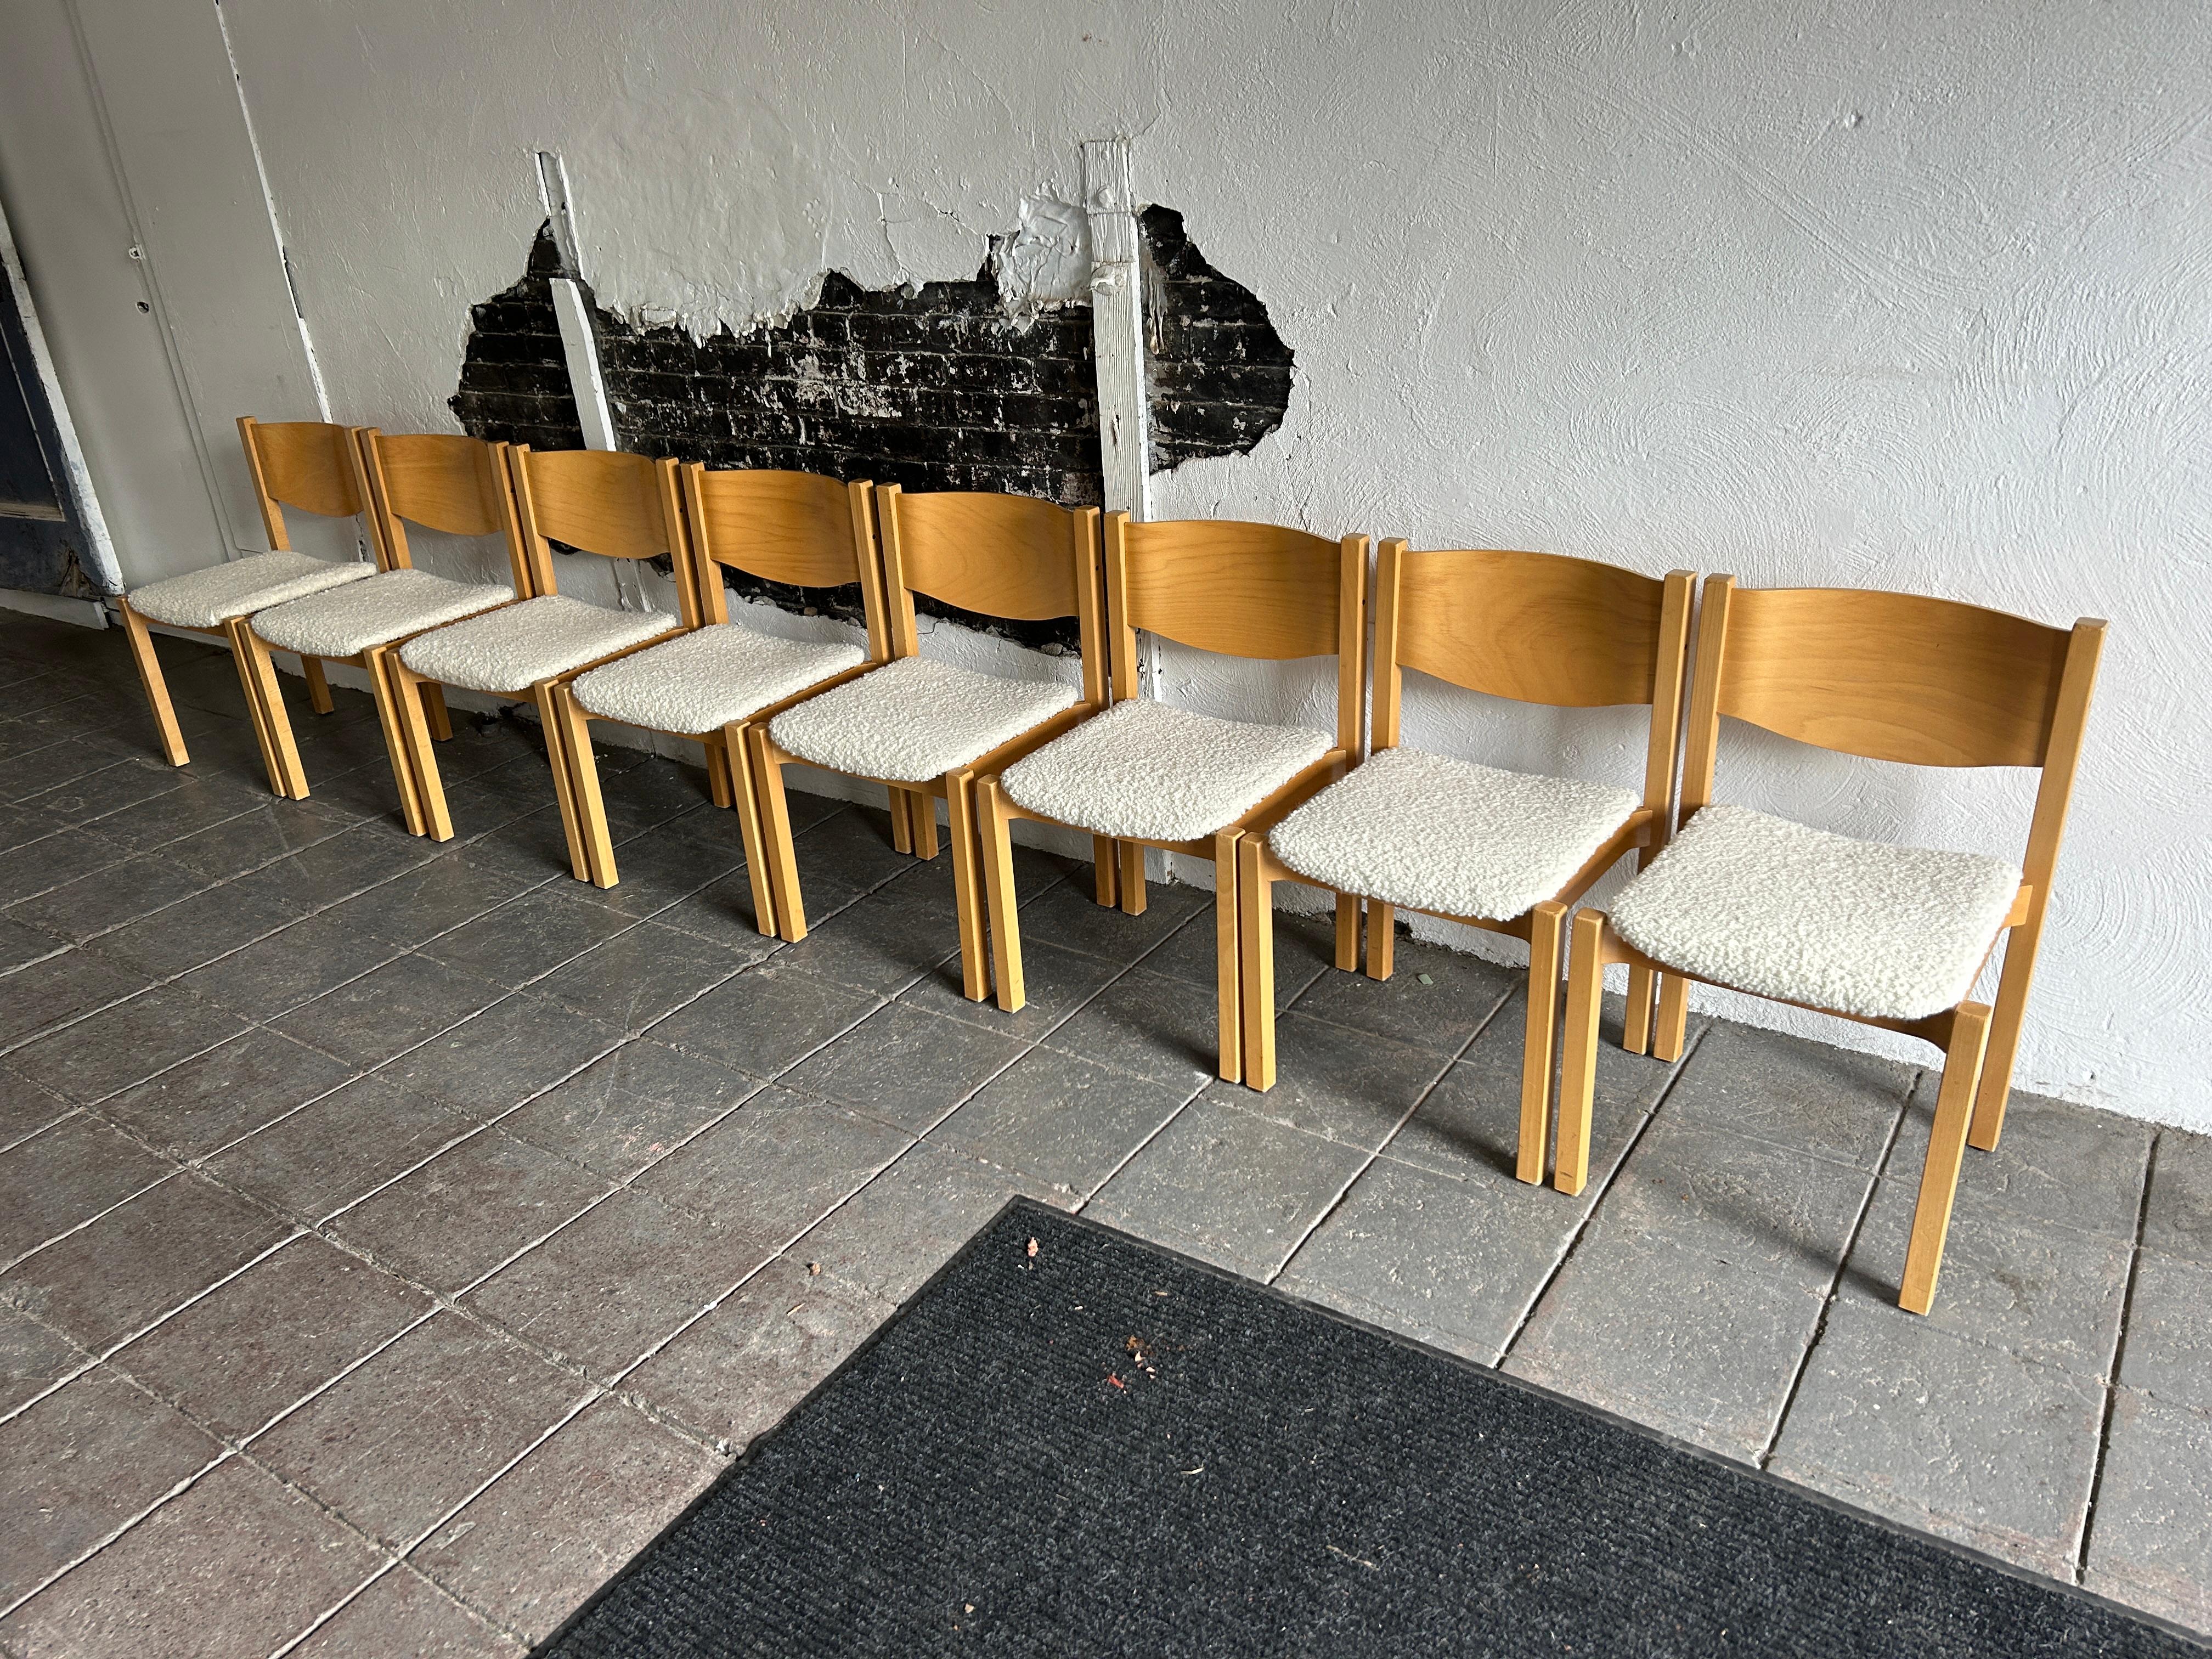 Lot de 8 chaises de salle à manger en bouleau moderne scandinave en boucle Tapisserie d'ameublement.

Vendu en lot de 8 chaises 